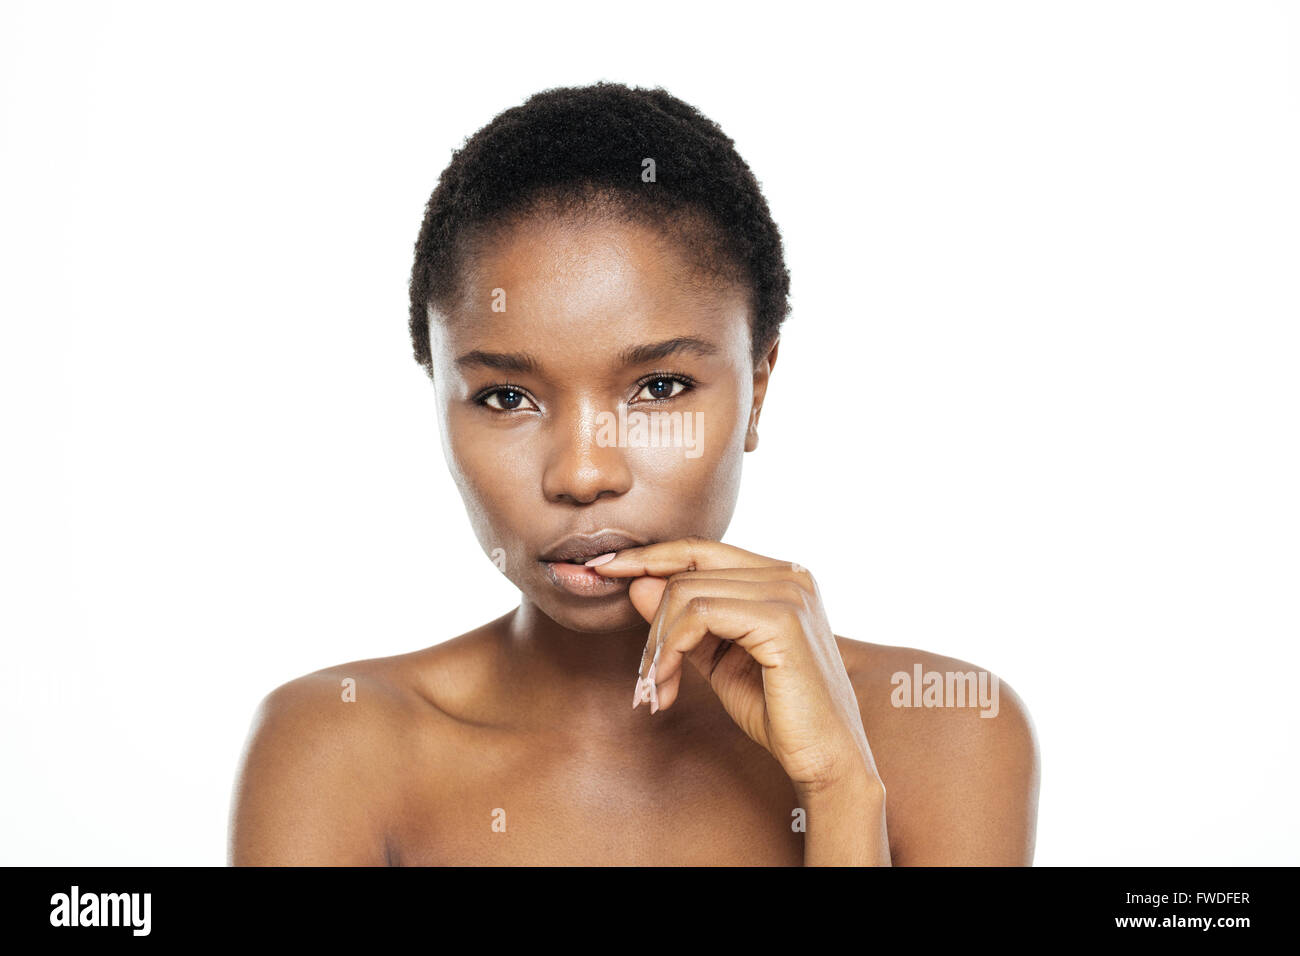 Malinconici afro american donna che guarda la telecamera isolata su uno sfondo bianco Foto Stock